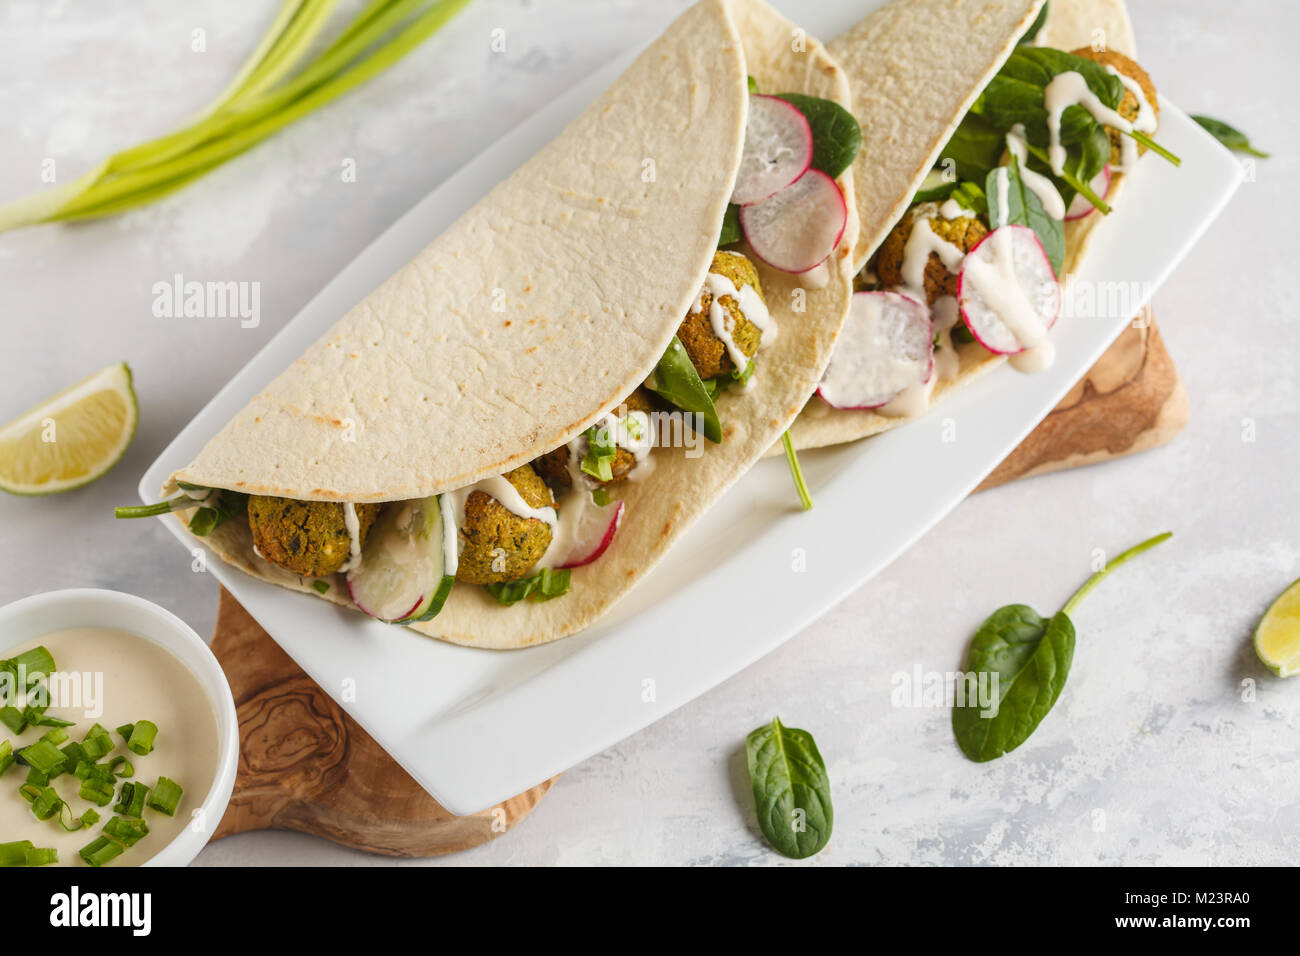 Falafels végétaliens avec légumes et sauce tahini tortilla dans sur un plat blanc. Vegan aliments sains Banque D'Images